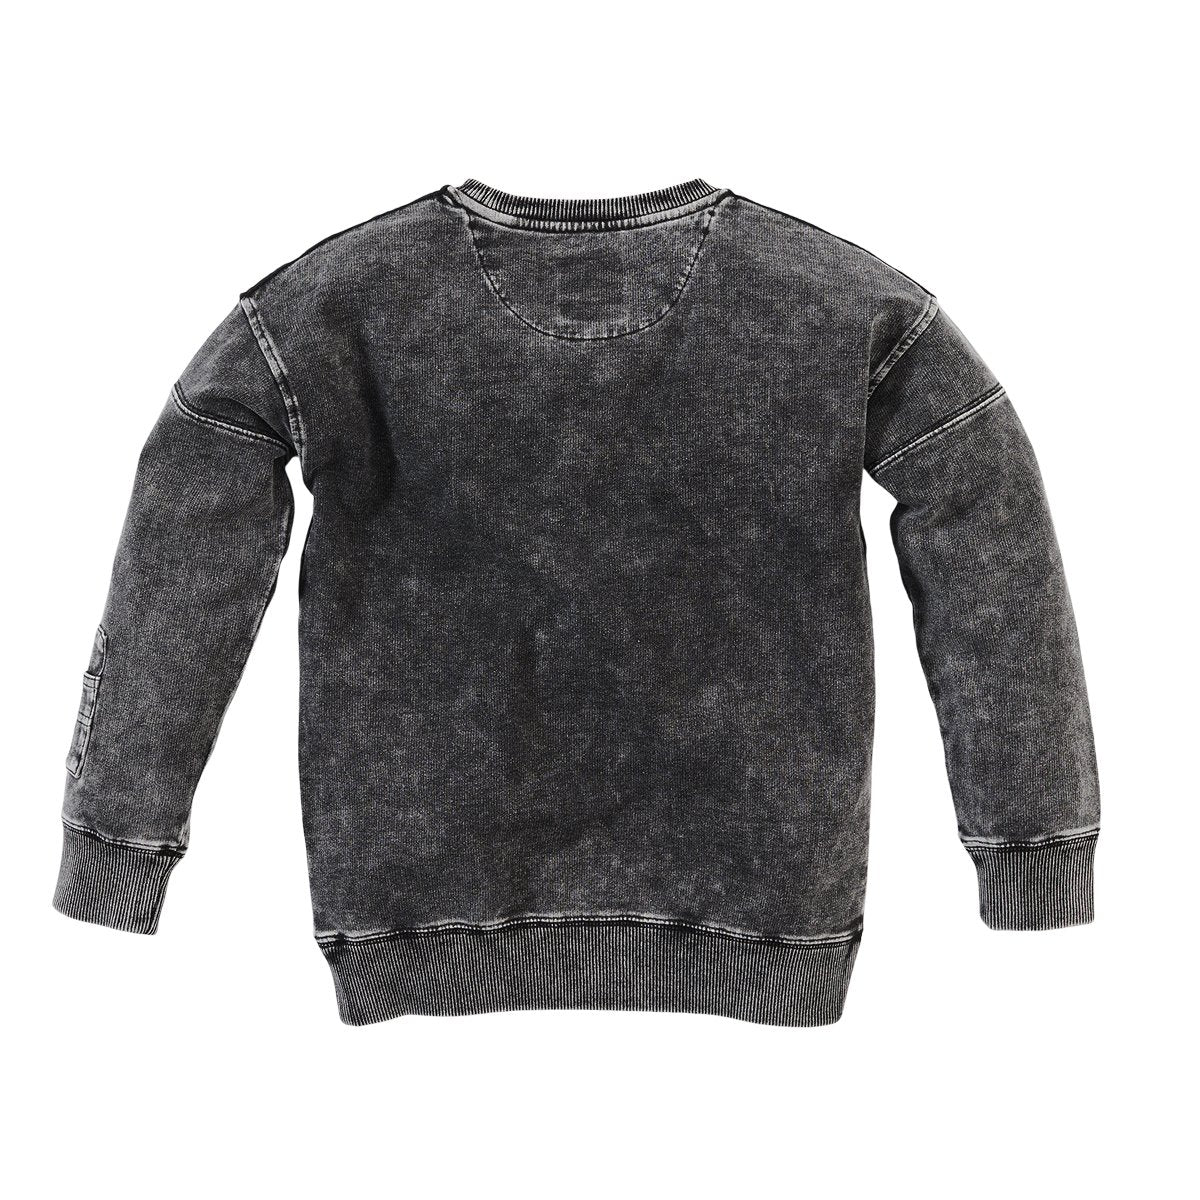 Jongens Sweater Chiel van Z8 in de kleur Stonewash black in maat 140/146.